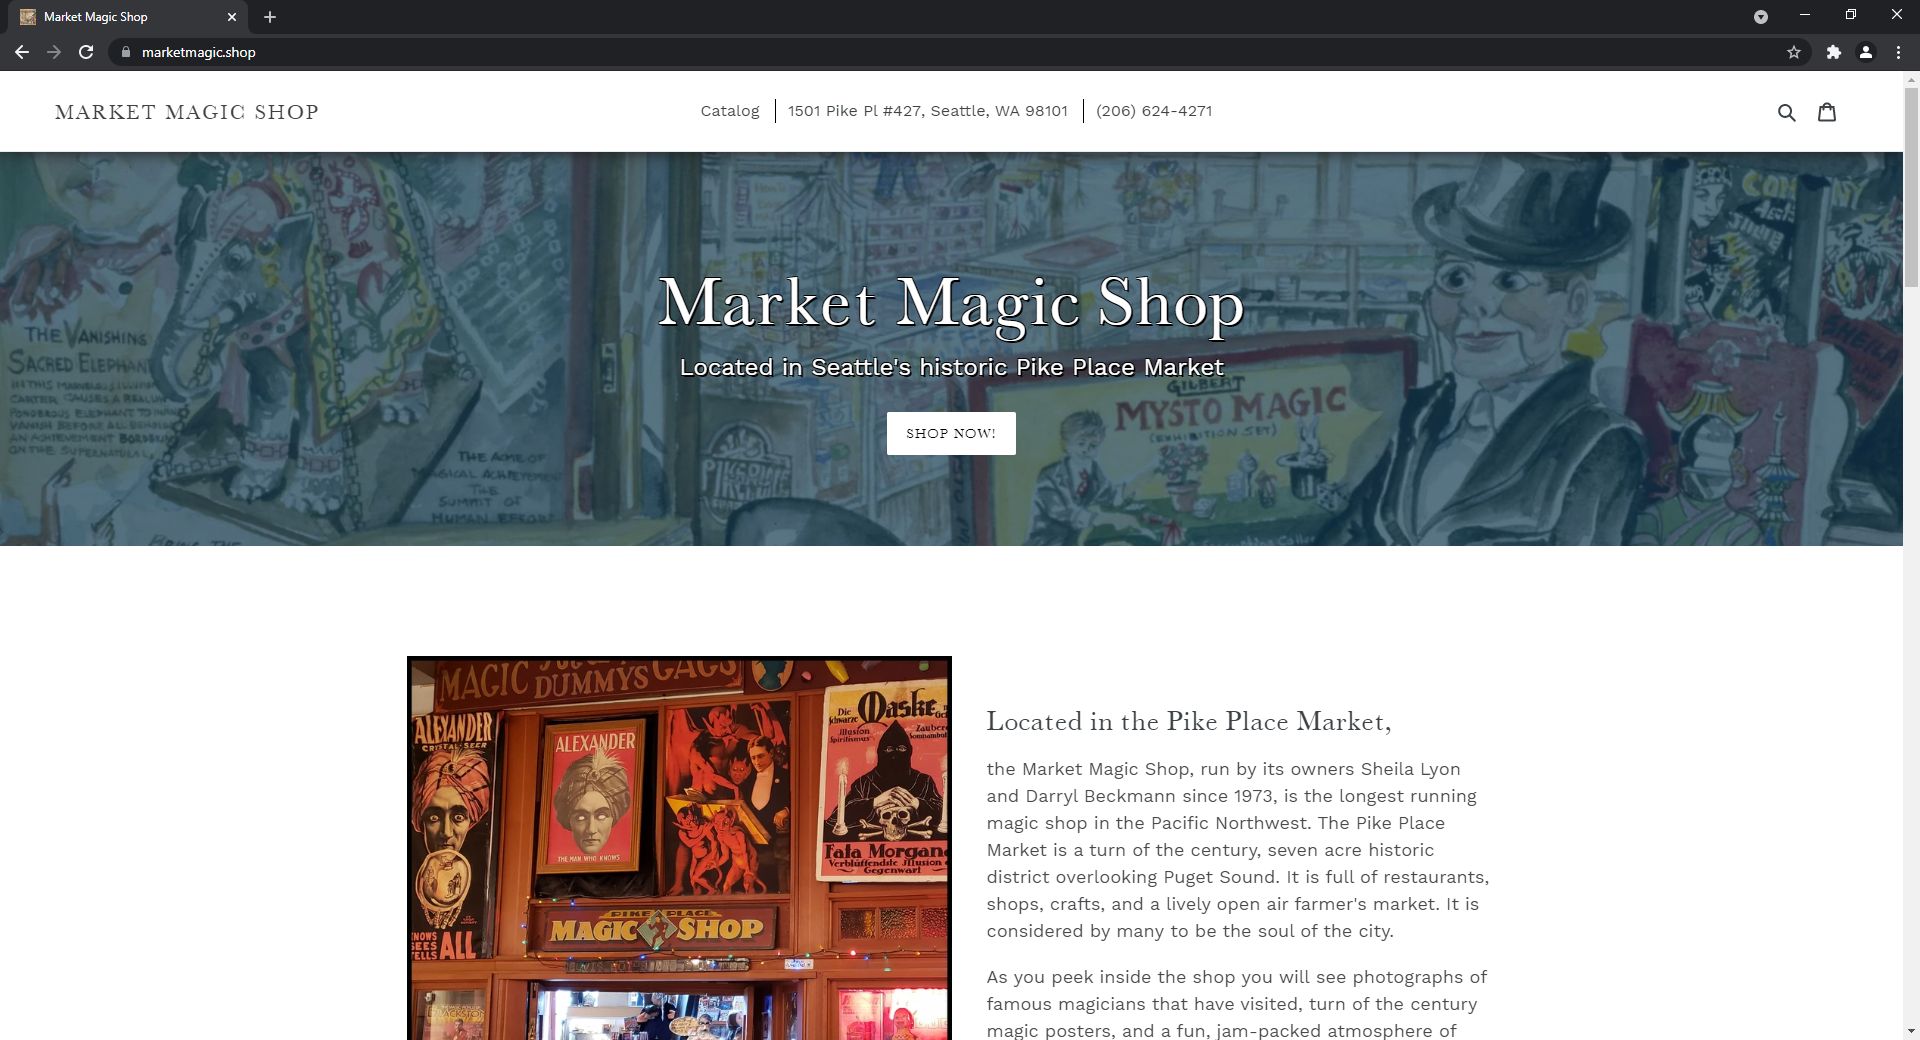 Pike Place Market Magic Shop